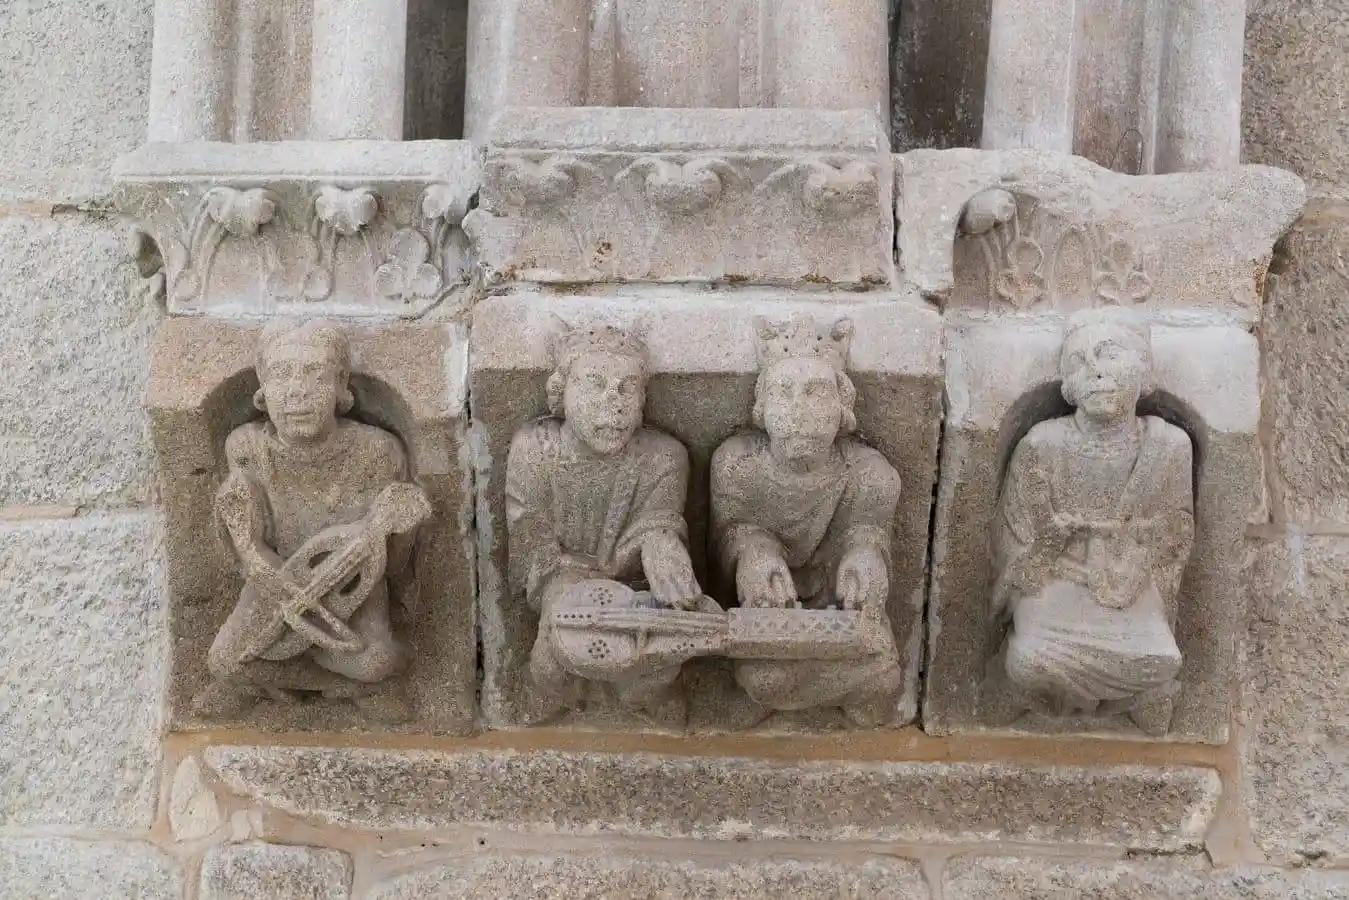 Detalle de uno de los capiteles del “Salón de ceremonias” del Palacio de Gelmírez.